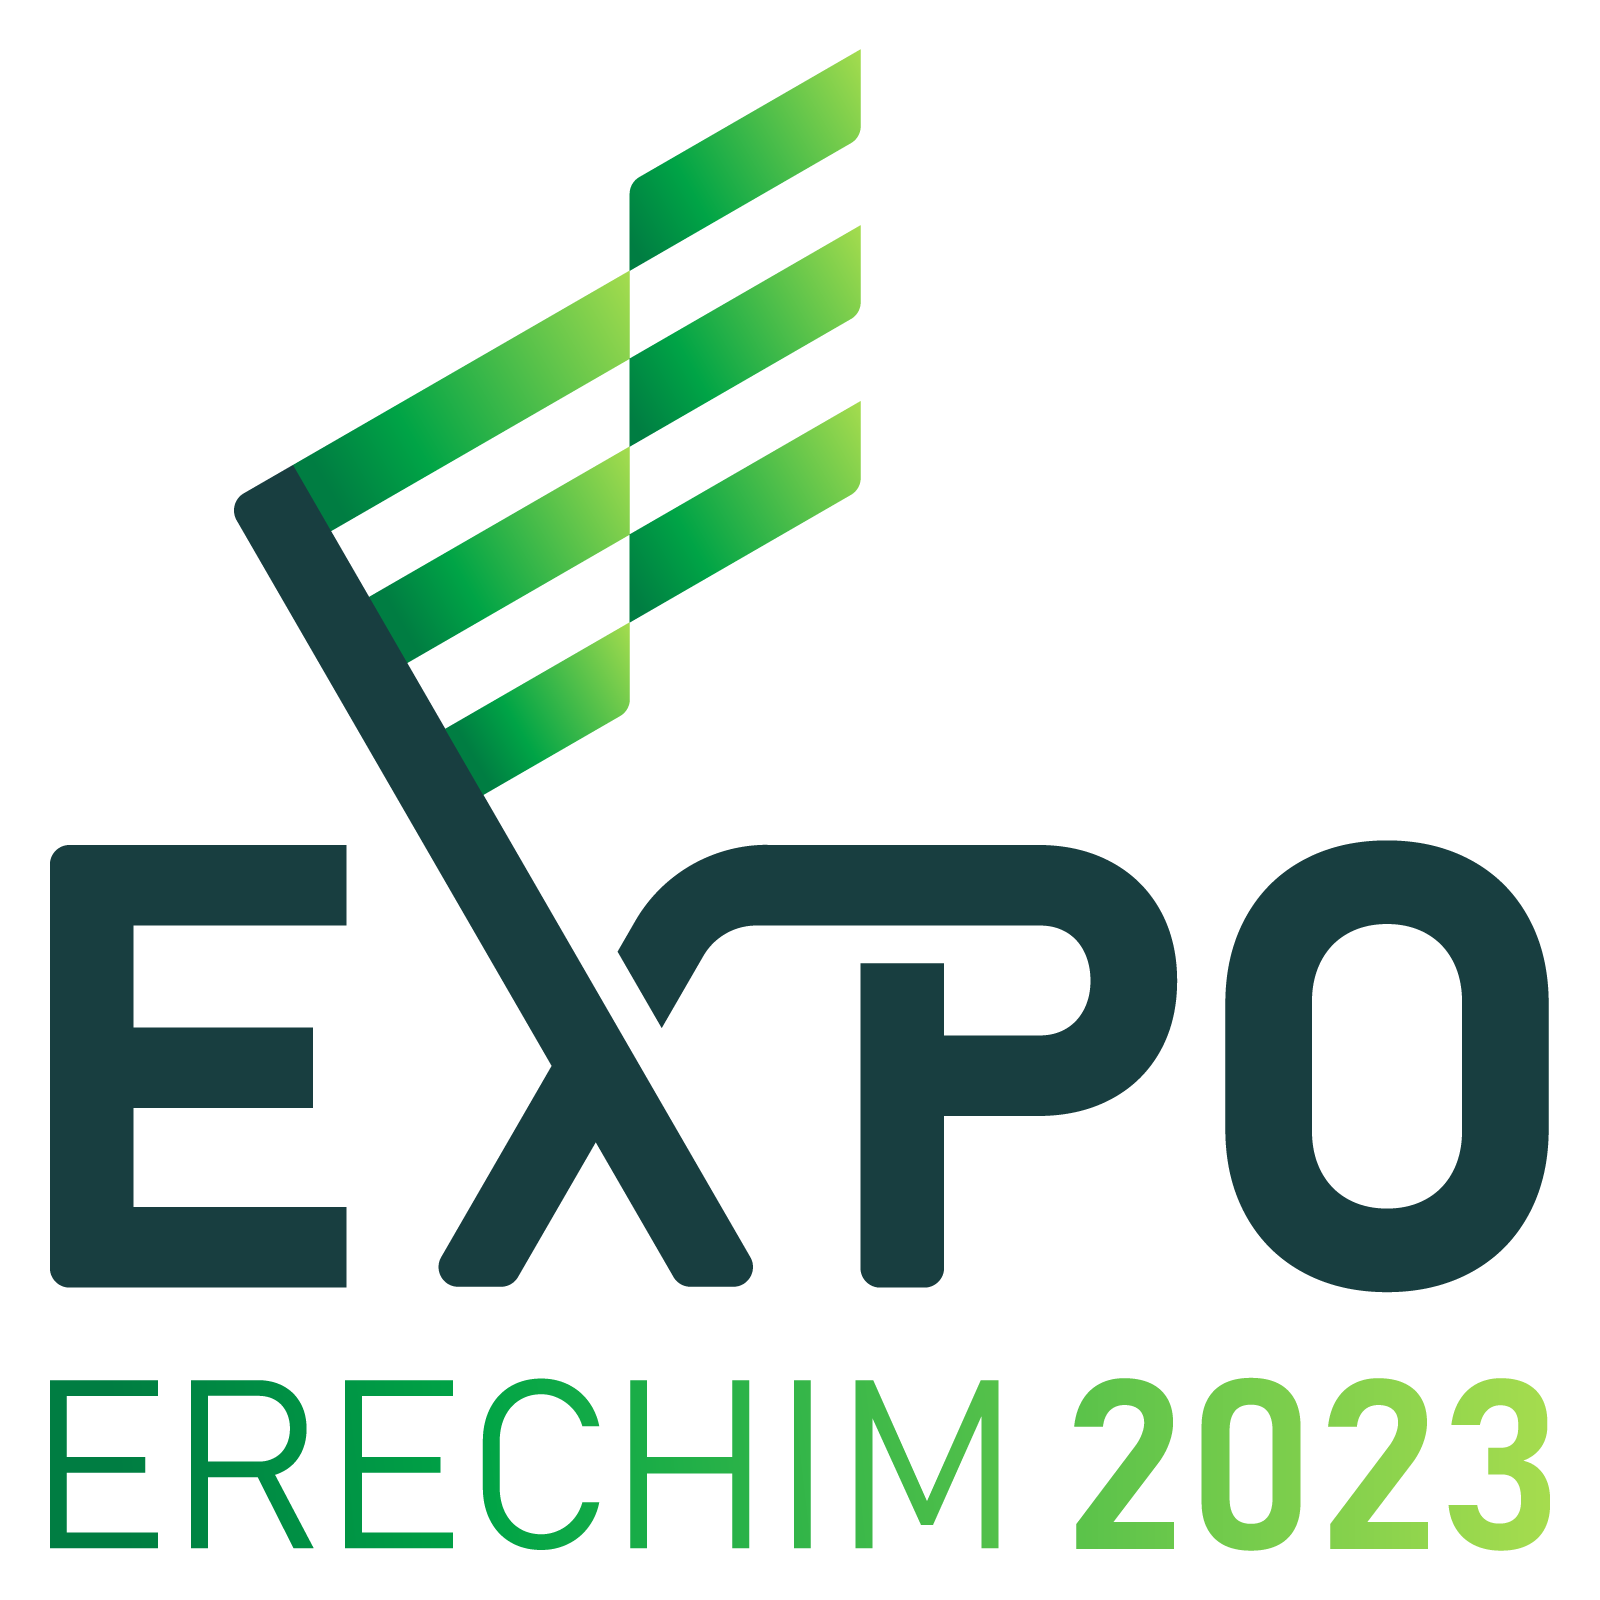 Expo Erechim